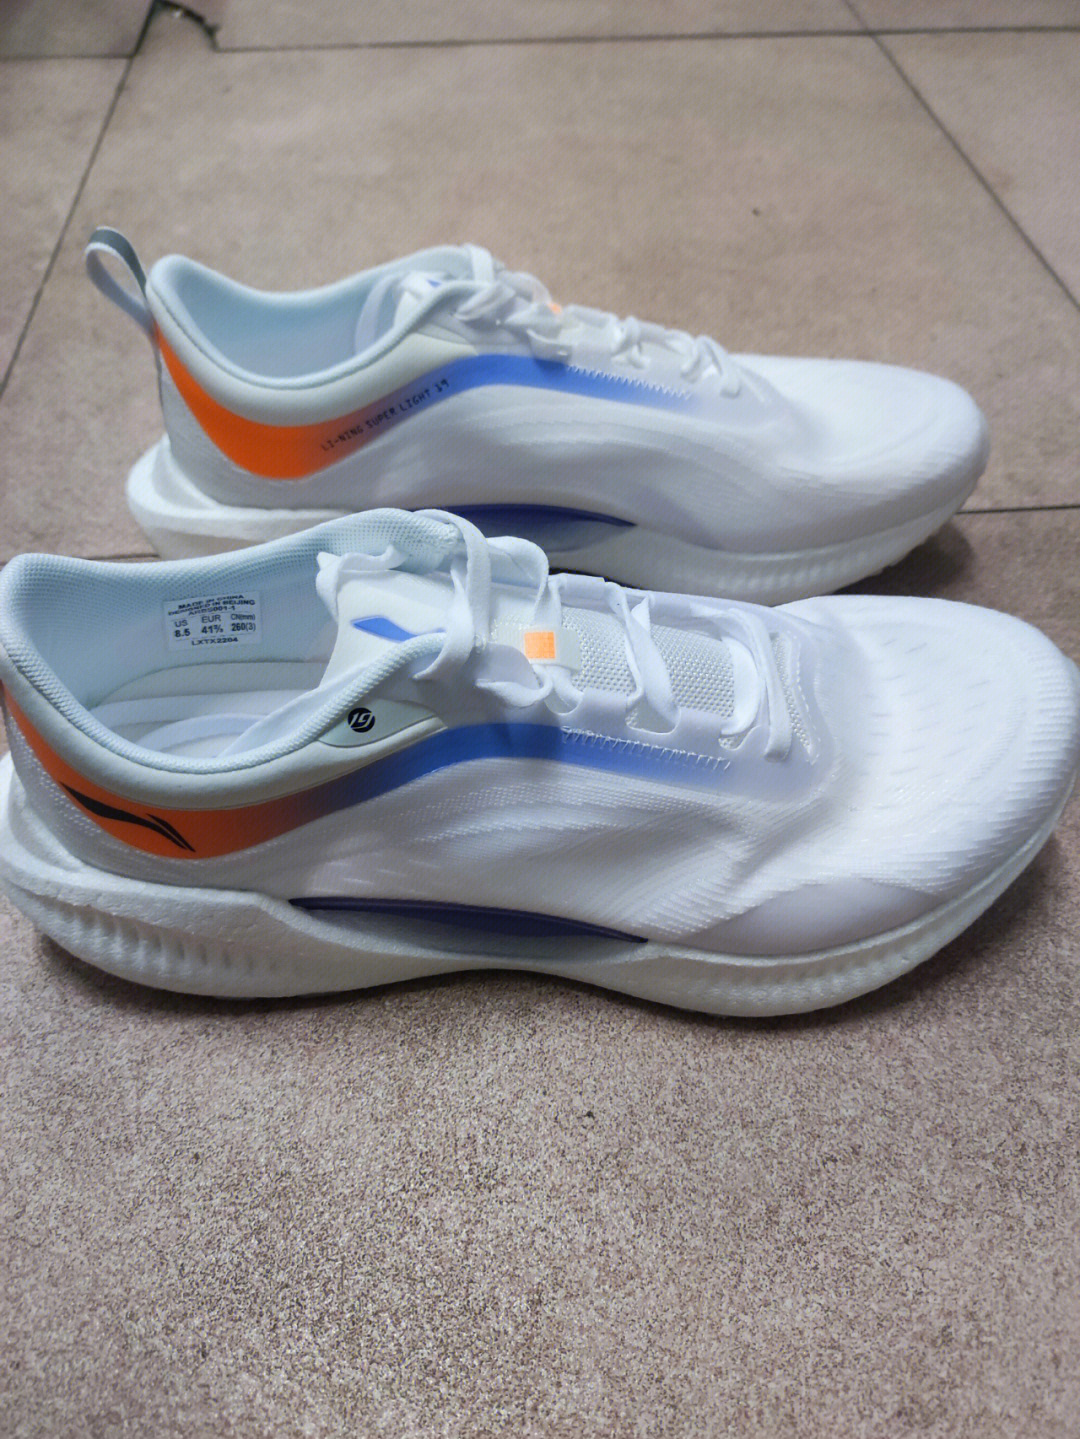 李宁跑鞋外观方面:鞋面轻薄且透气,大面积白色鞋身搭配蓝,橙色的流畅